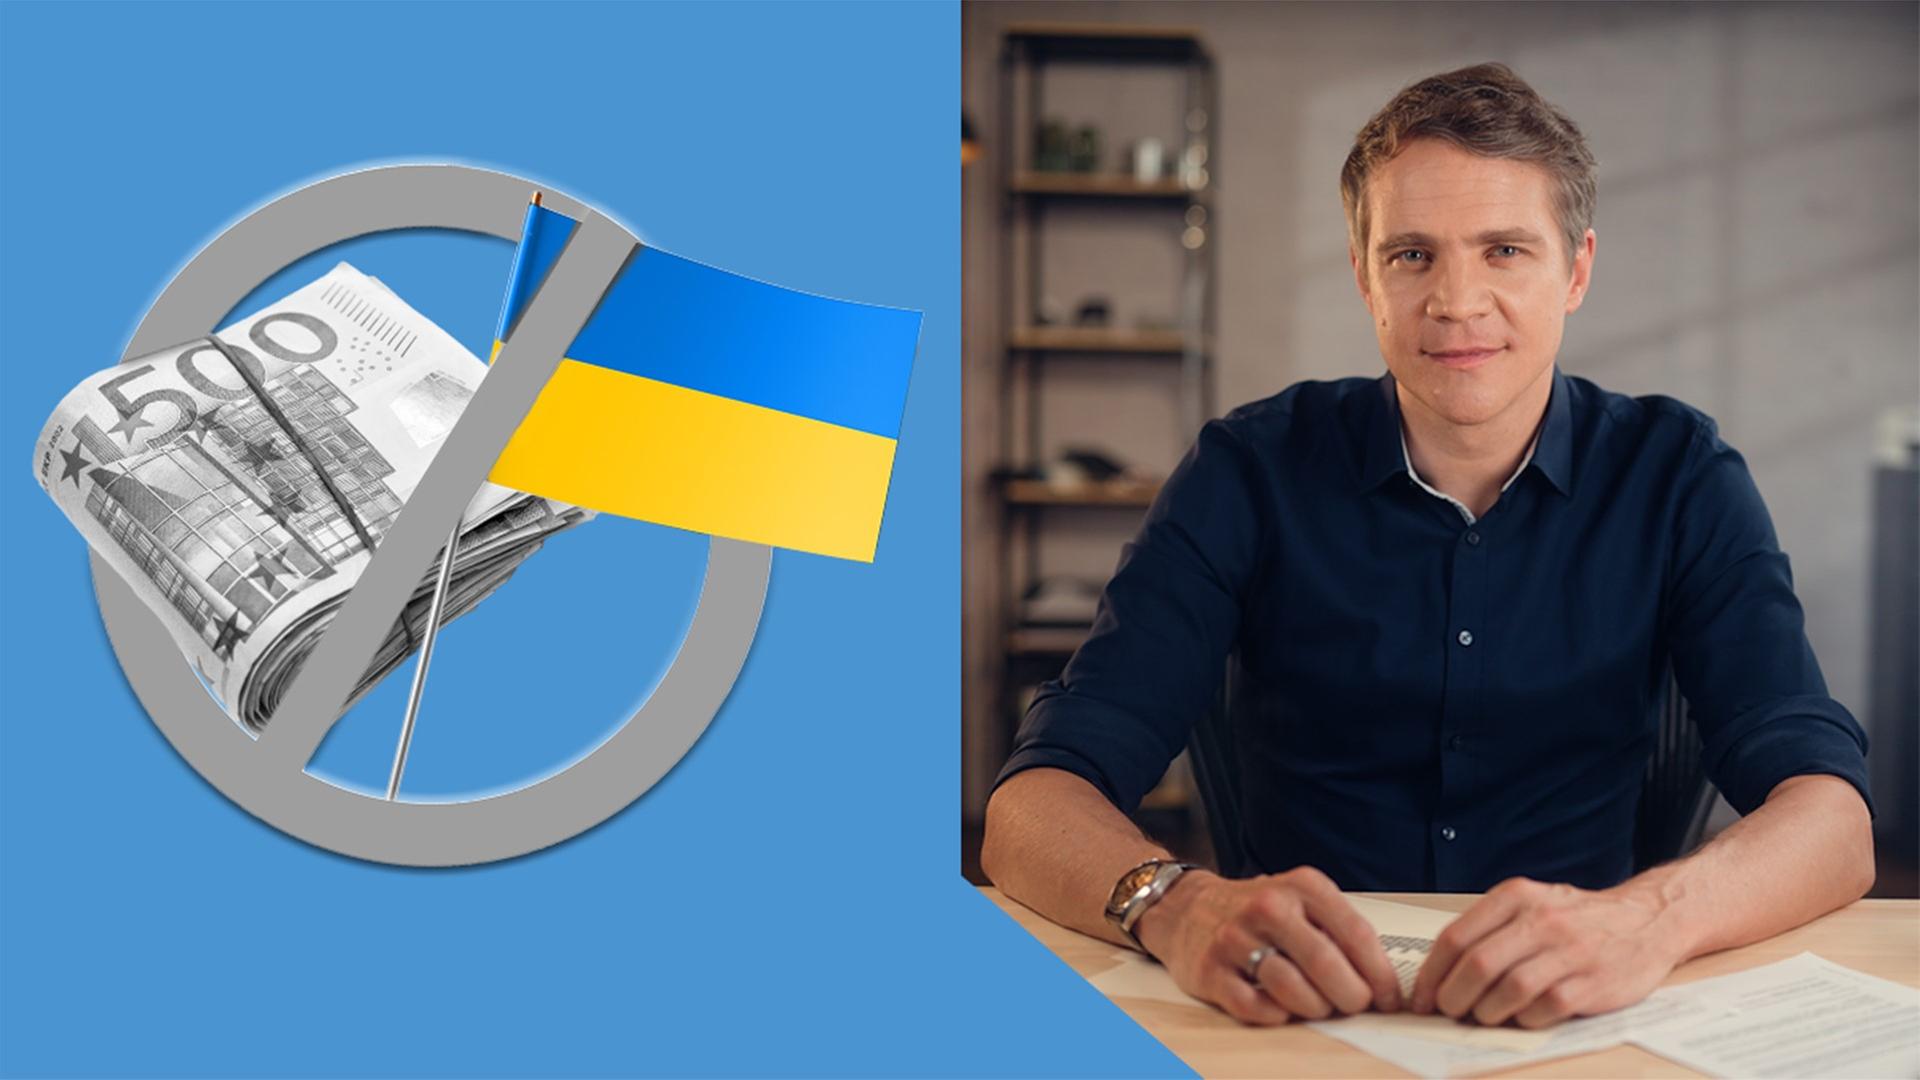 links im Bild: Geldbündel mit 500-Euro-Scheinen, eine Ukraine-Flagge, über beidem ein Kreis mit einem Strich durch - rechts im Bild: ZDF-Hauptstadtkorrespondent Daniel Pontzen am Schreibtisch